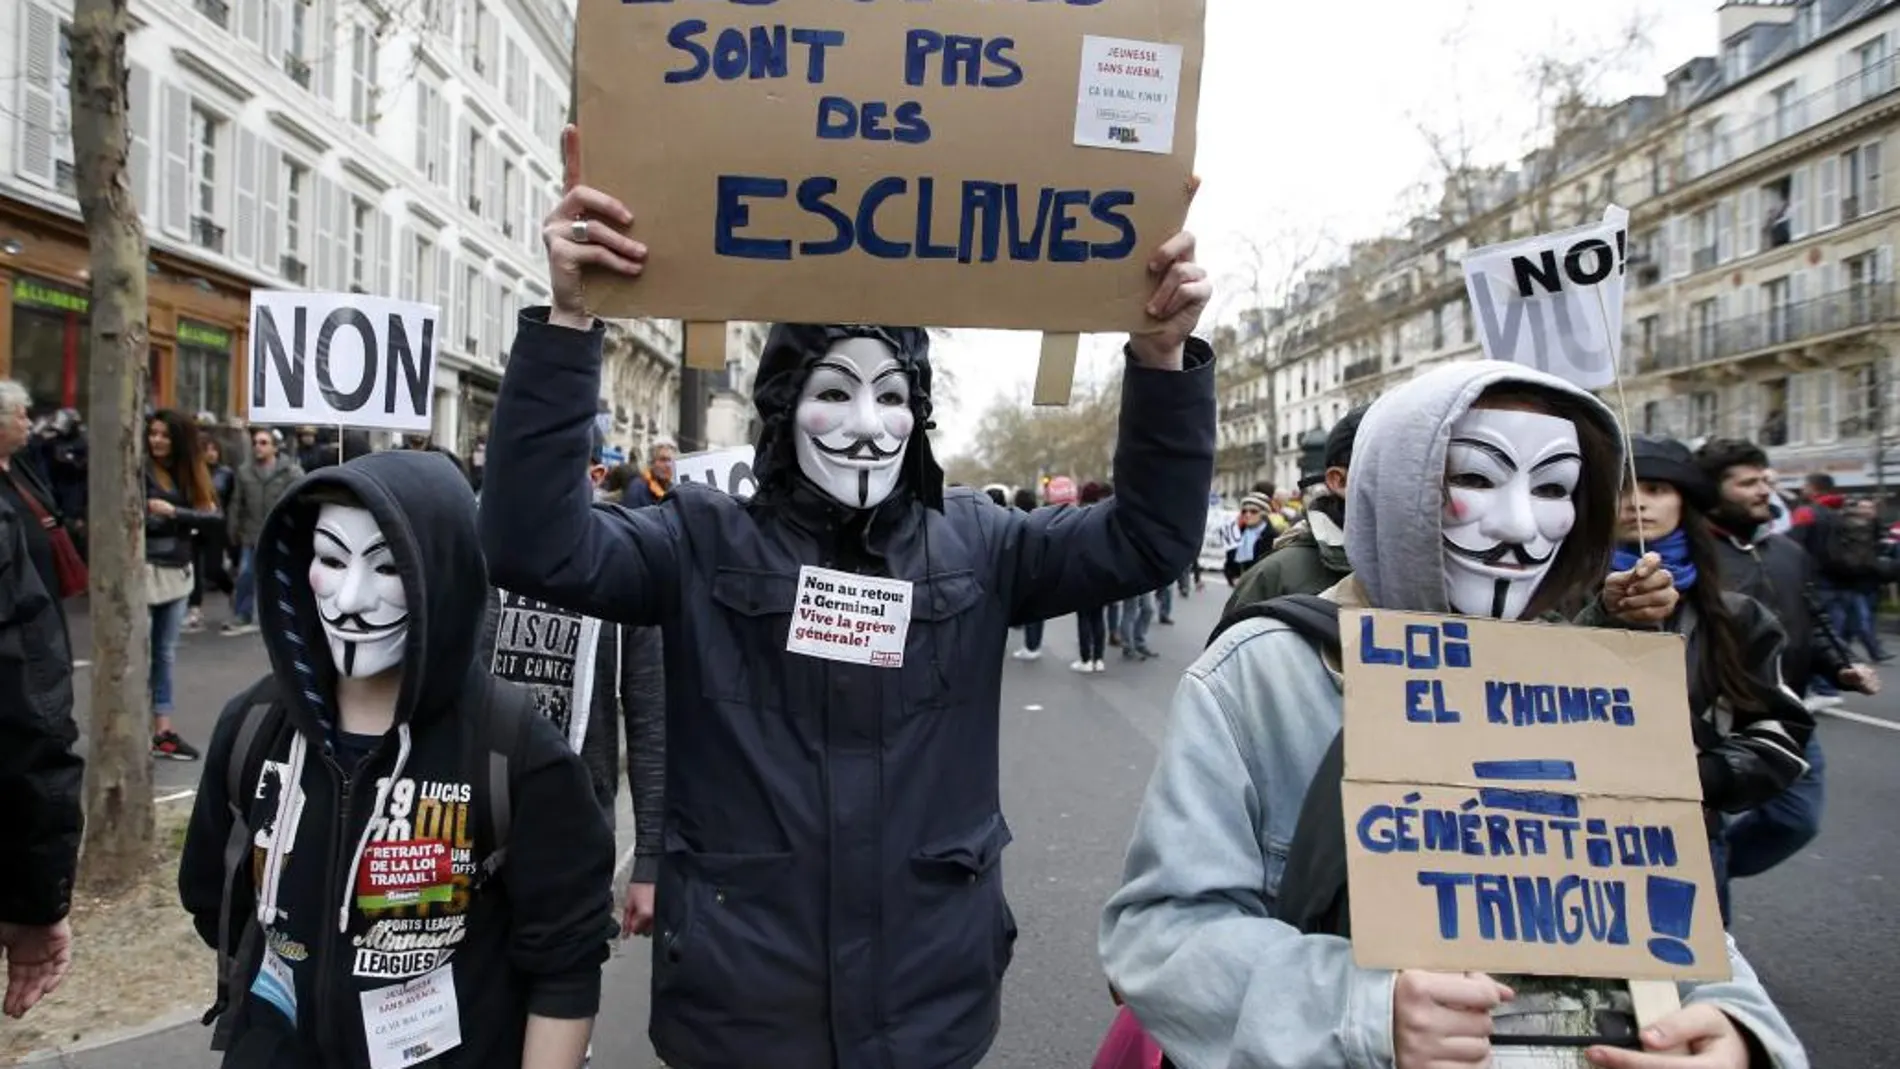 Incidentes en las manifestaciones contra la reforma laboral en Francia